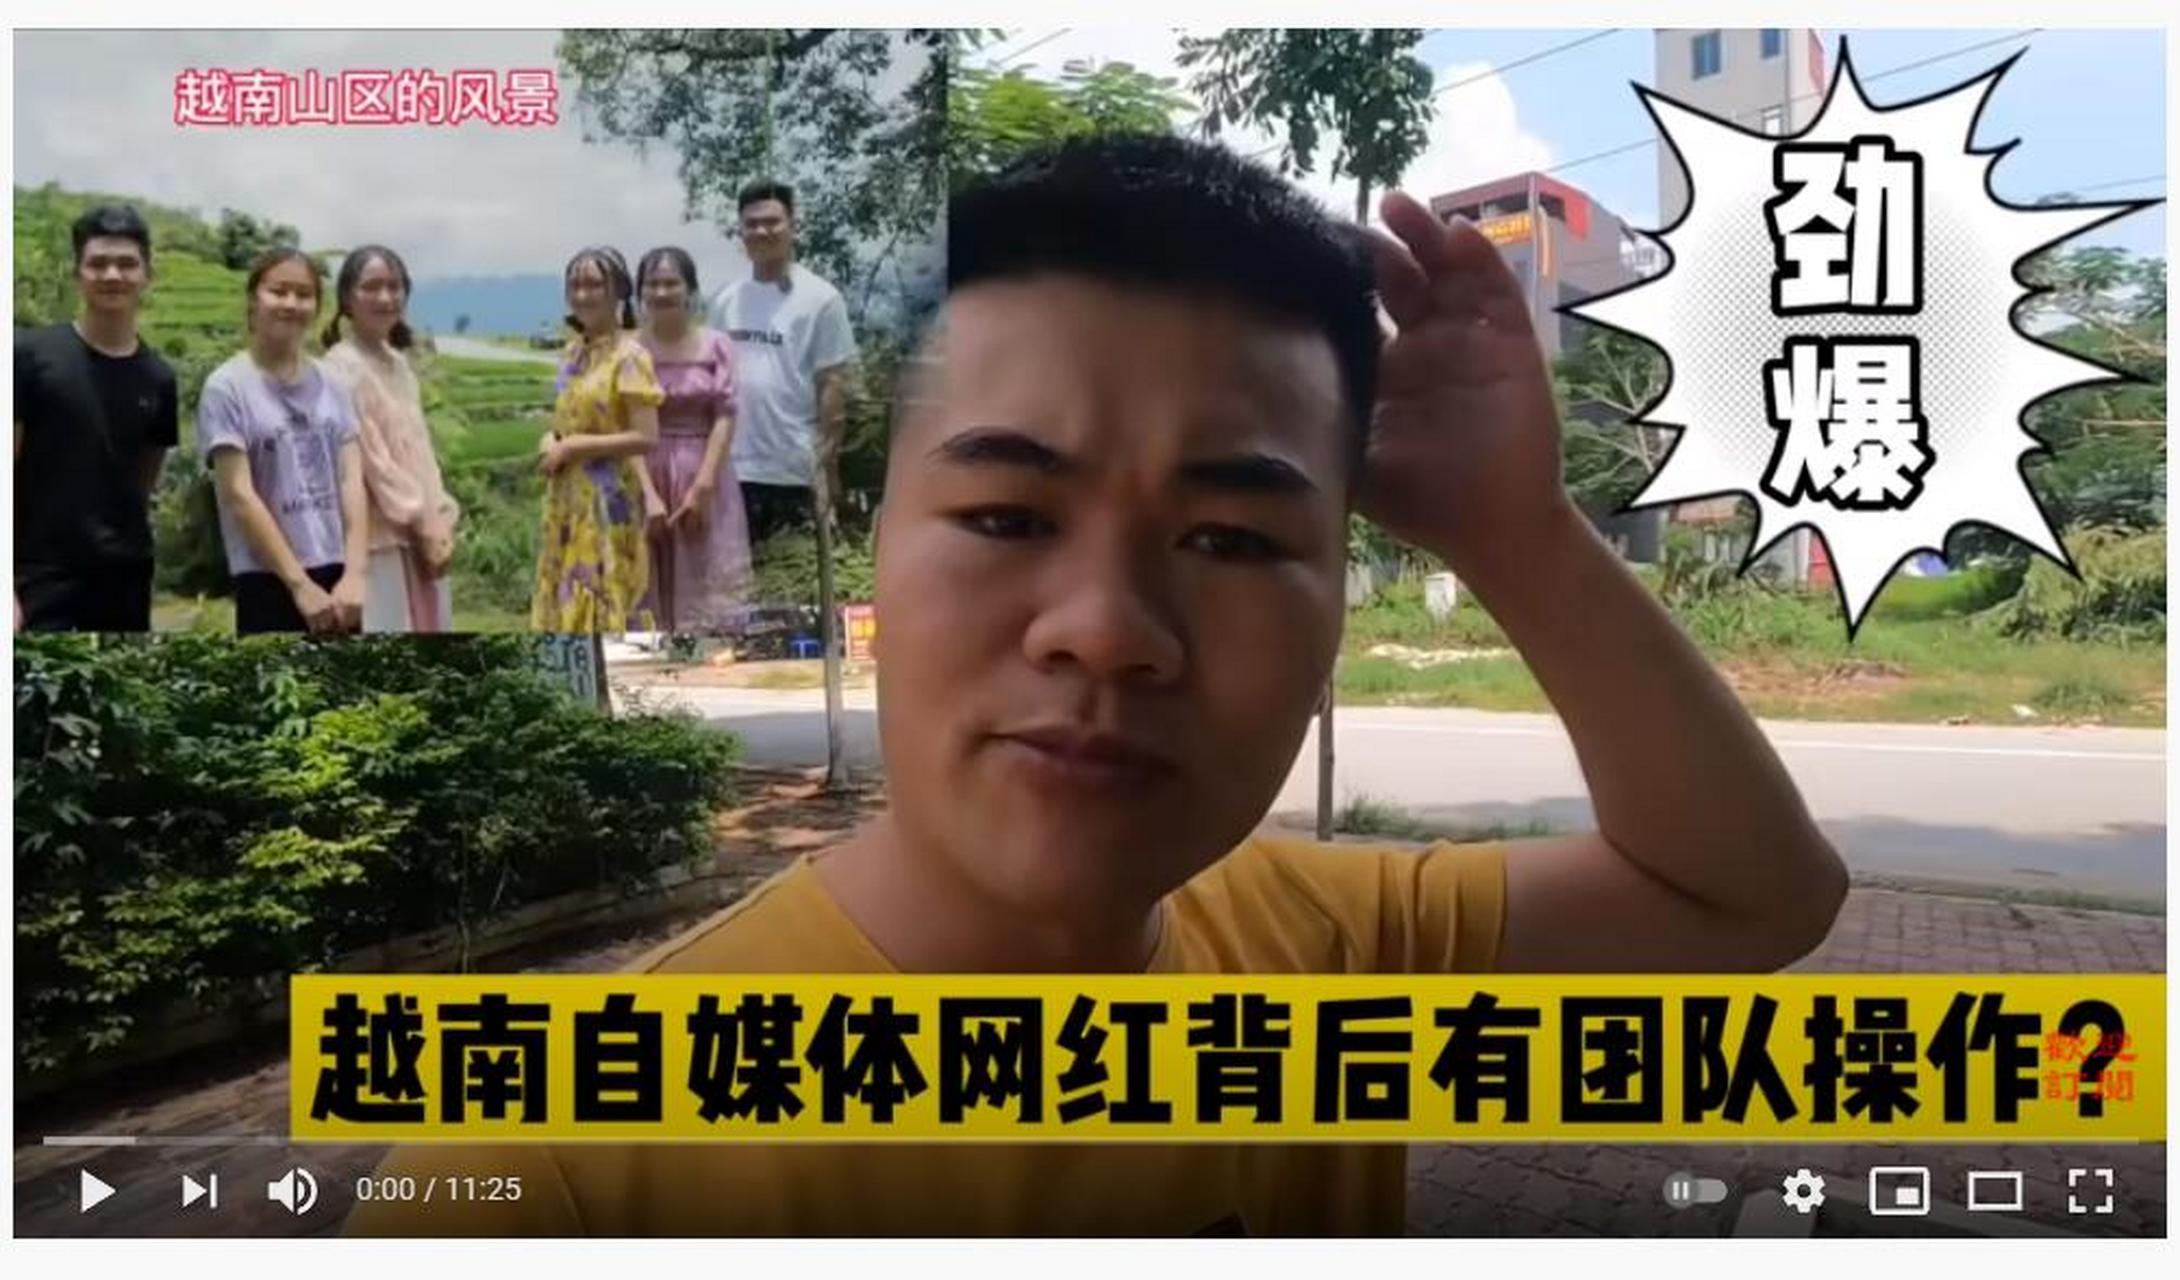 黄宝强(何导)与老街帮越南自媒体是啥关系 何导开始揭露一些事情了